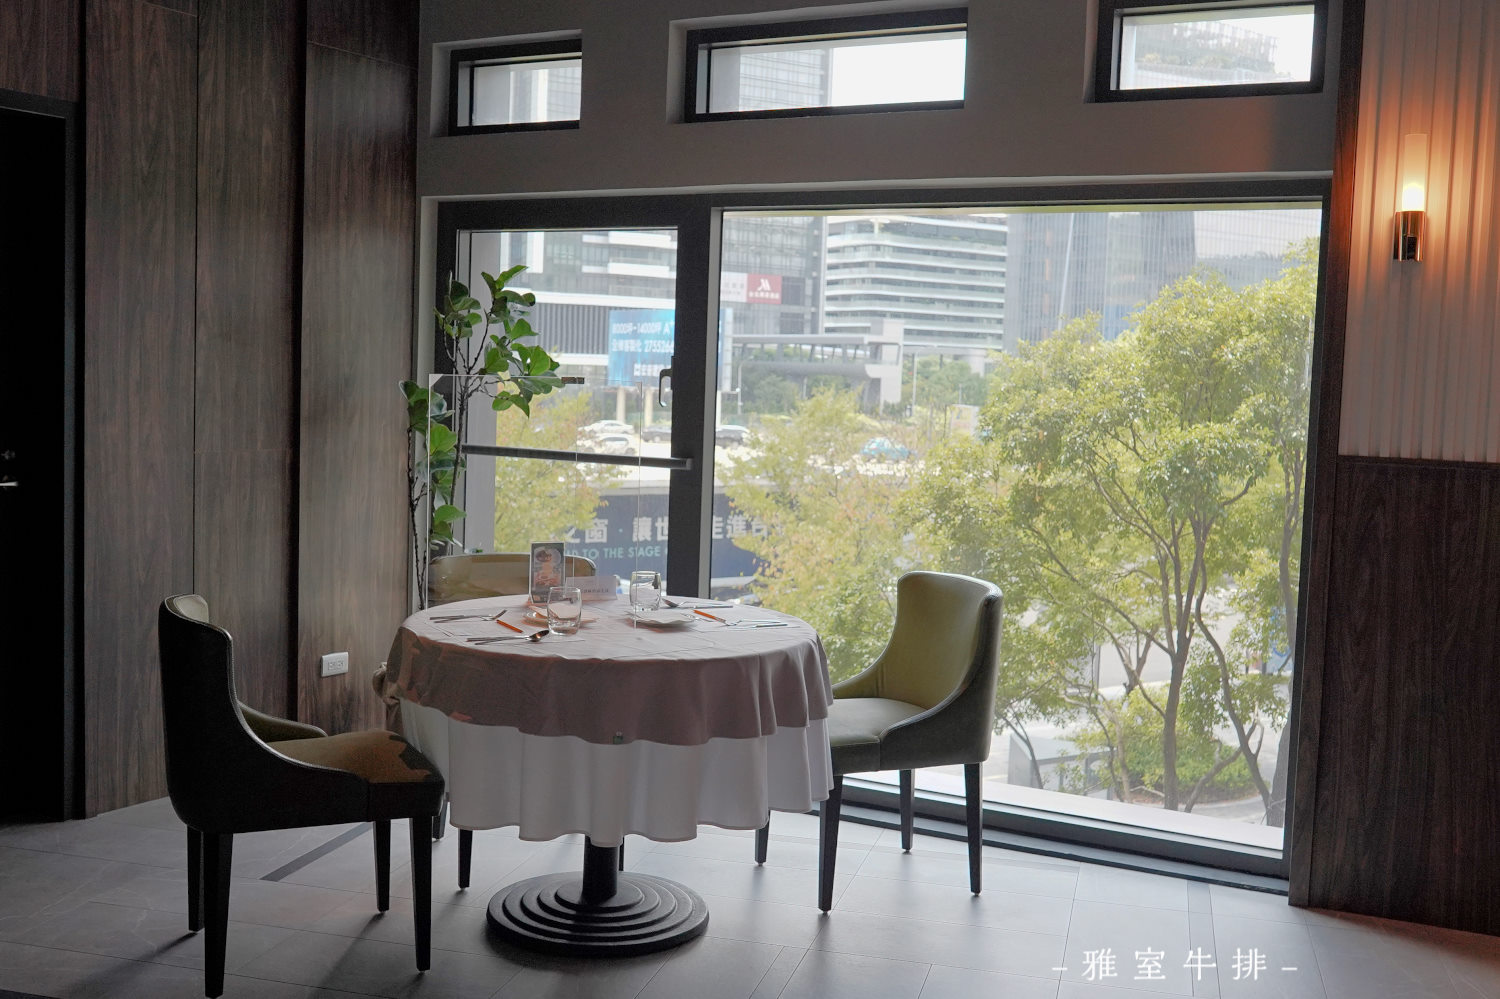 大台北約會餐廳懶人包，浪漫氣氛與精緻餐食超適合情侶情人節約會、慶祝生日、求婚的美食餐廳